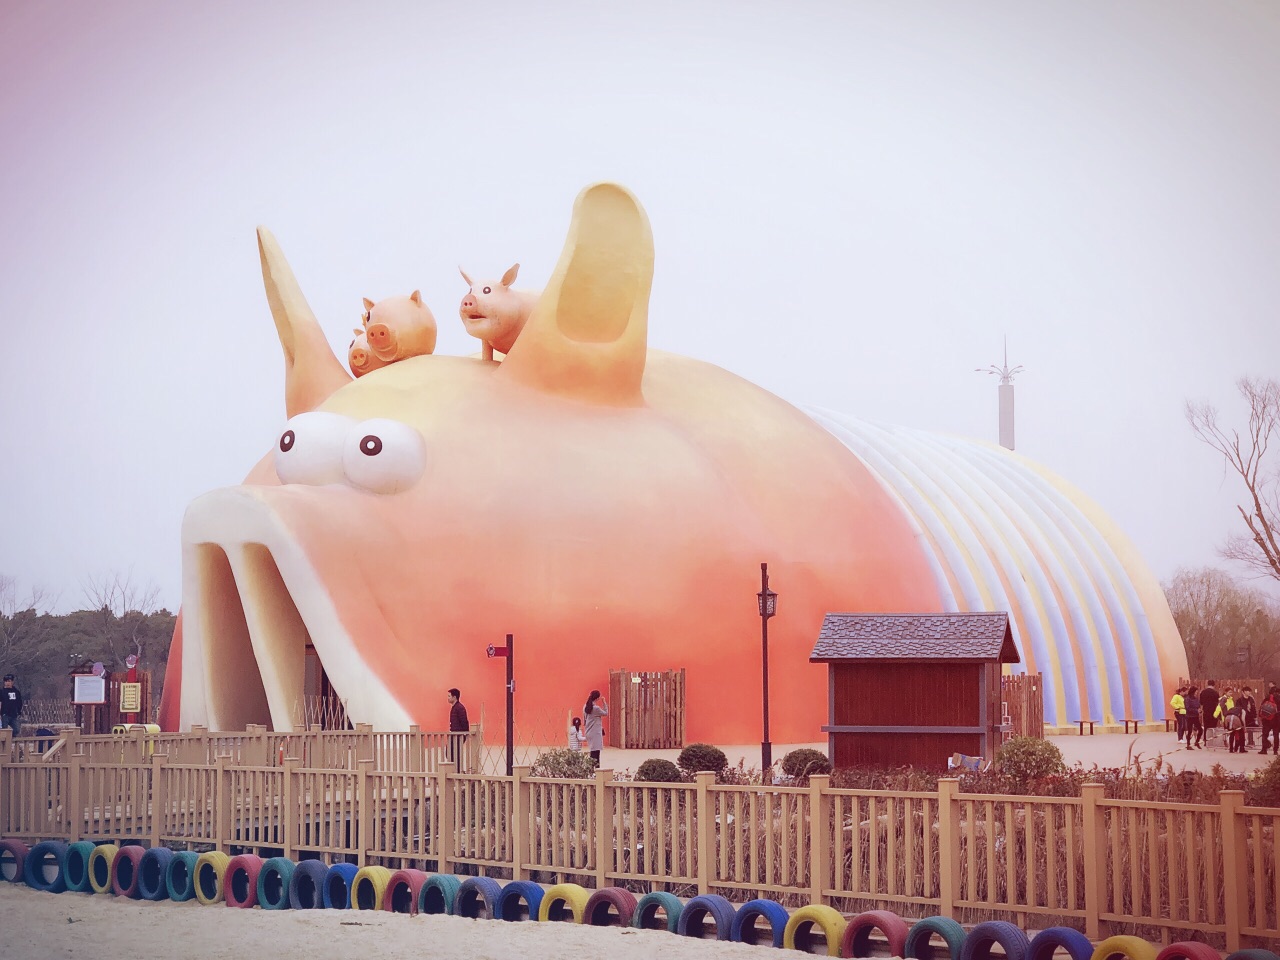 嘉兴猪猪星球乐园图片